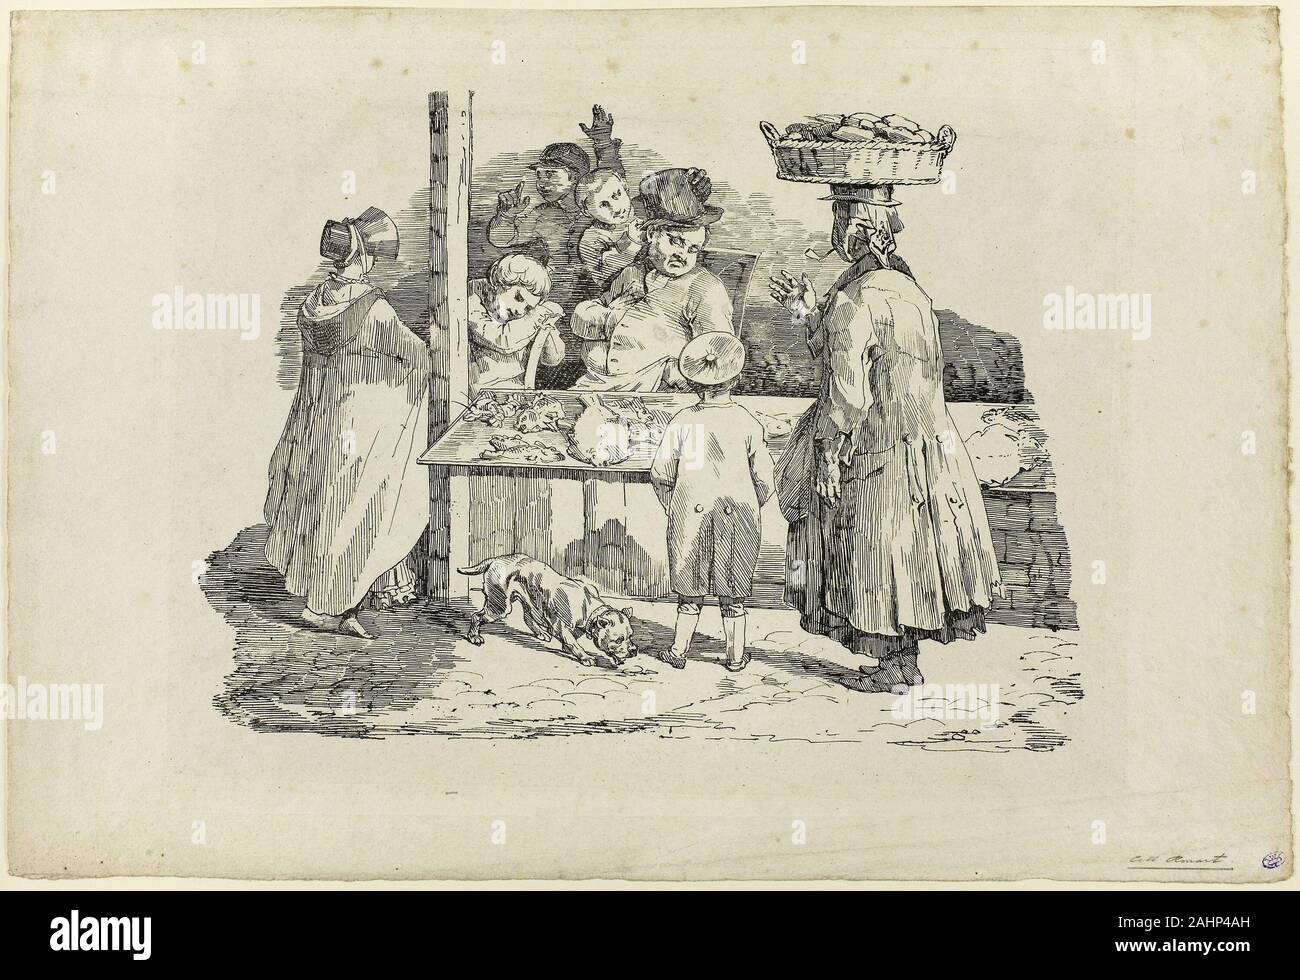 Jean Louis André Théodore Géricault. Le poissonnier de couchage. 1820. La France. Lithographie en noir sur papier vélin gris clair Banque D'Images